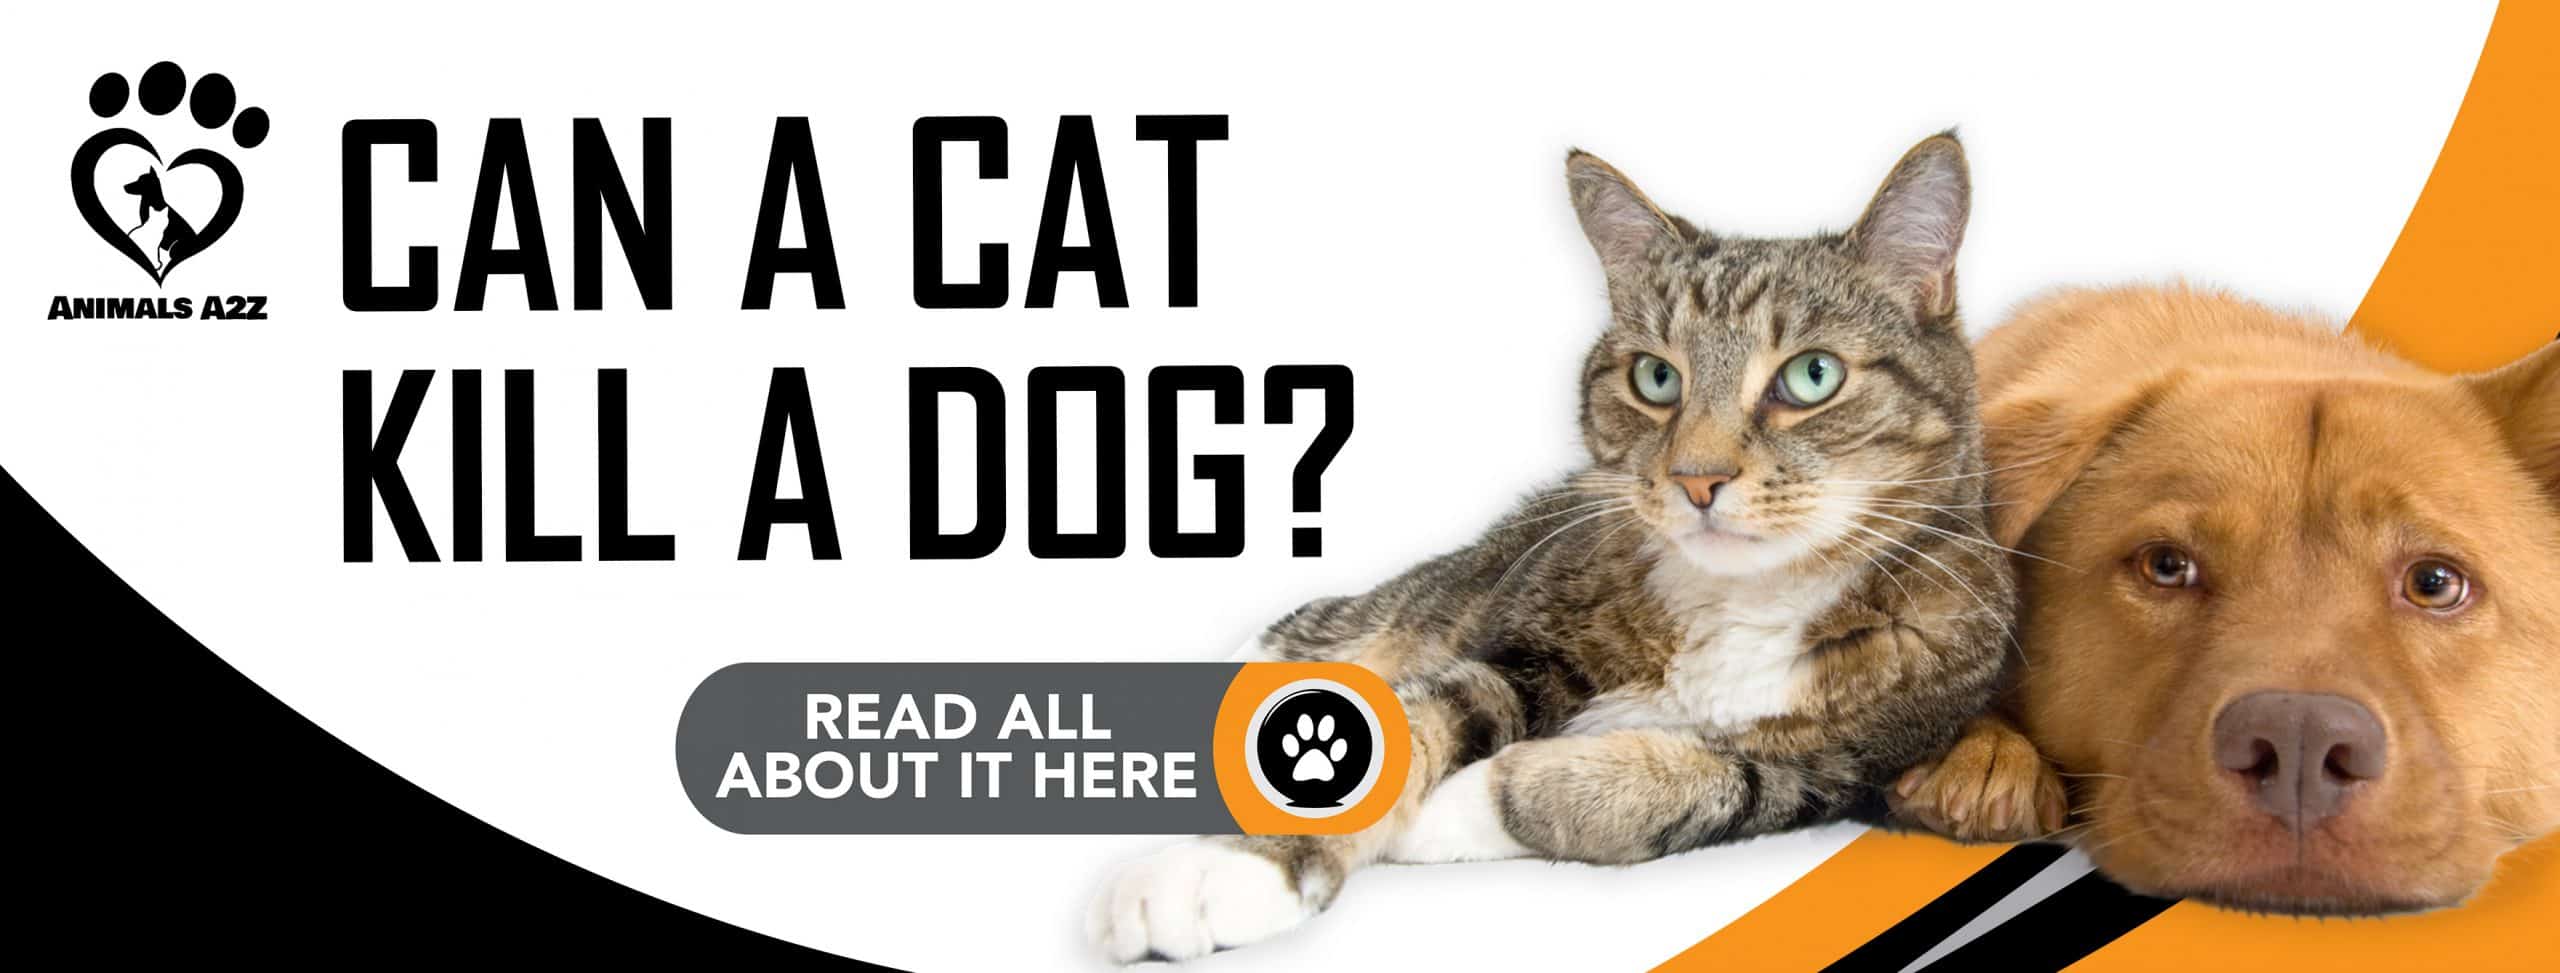 Kann eine Katze einen Hund töten?